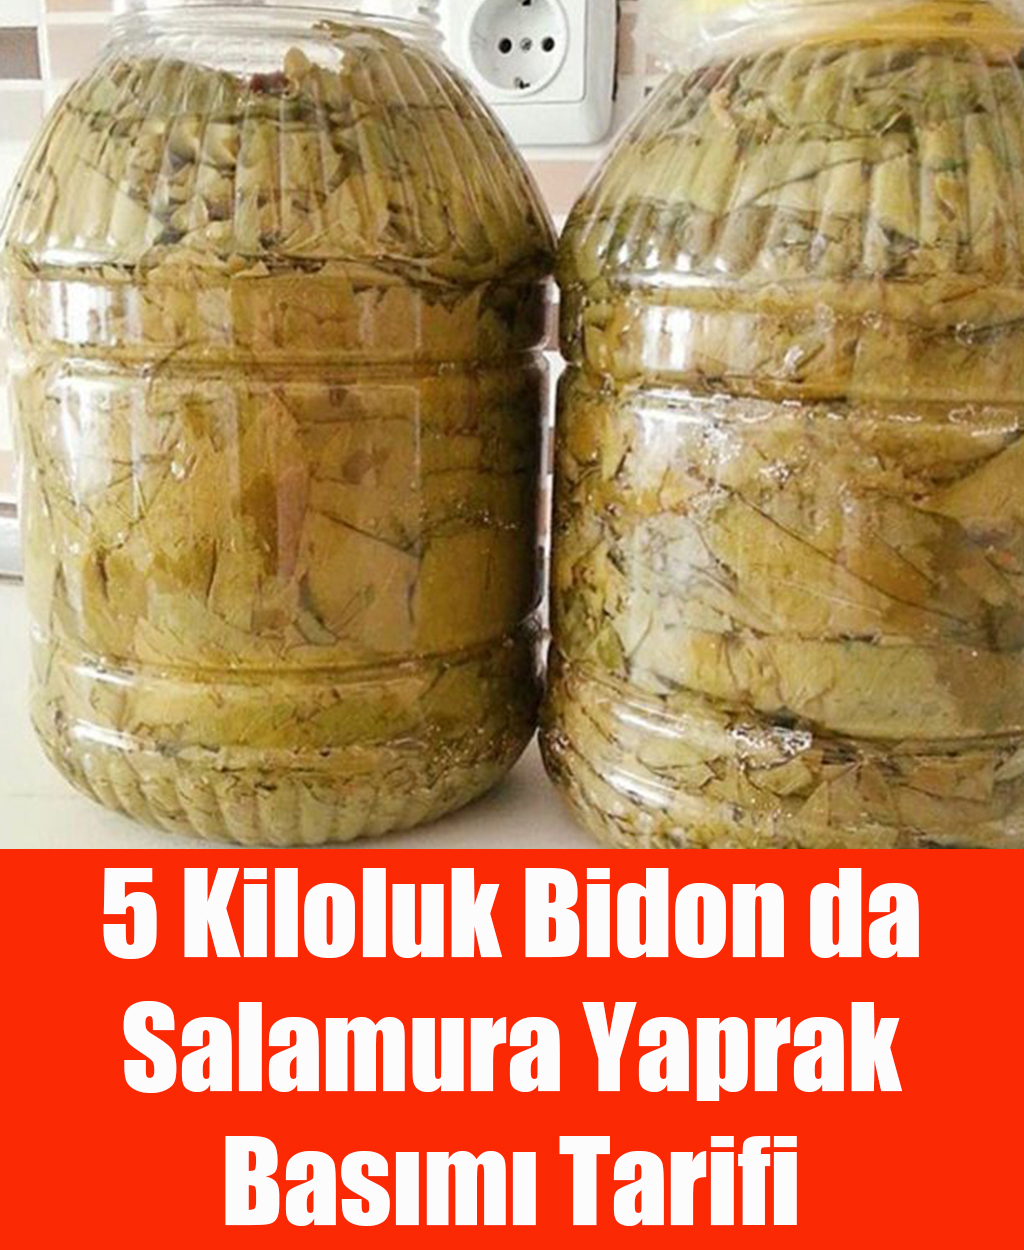 5 Kiloluk Bidon da Salamura Yaprak Basımı - 1